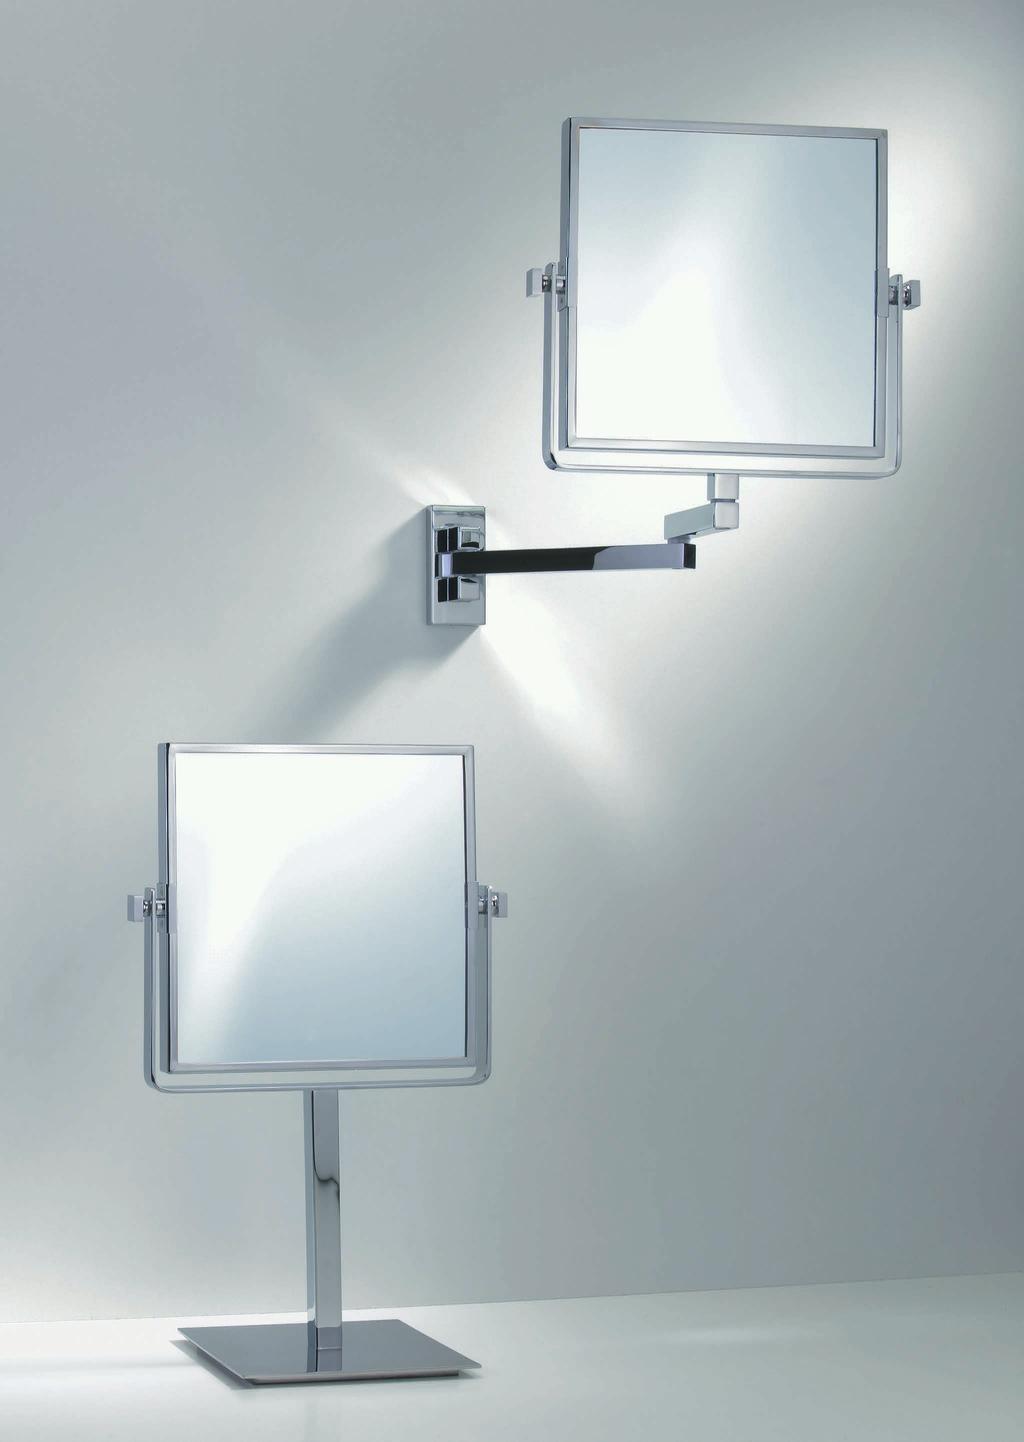 102 SPT 83 Standkosmetikspiegel / Cosmetic mirror 3-fache + 1-fache Vergrößerung / 3x + 1x magnification Spiegel / Mirror H 18,5. B/W 18,5cm gesamt / total H 38,5.